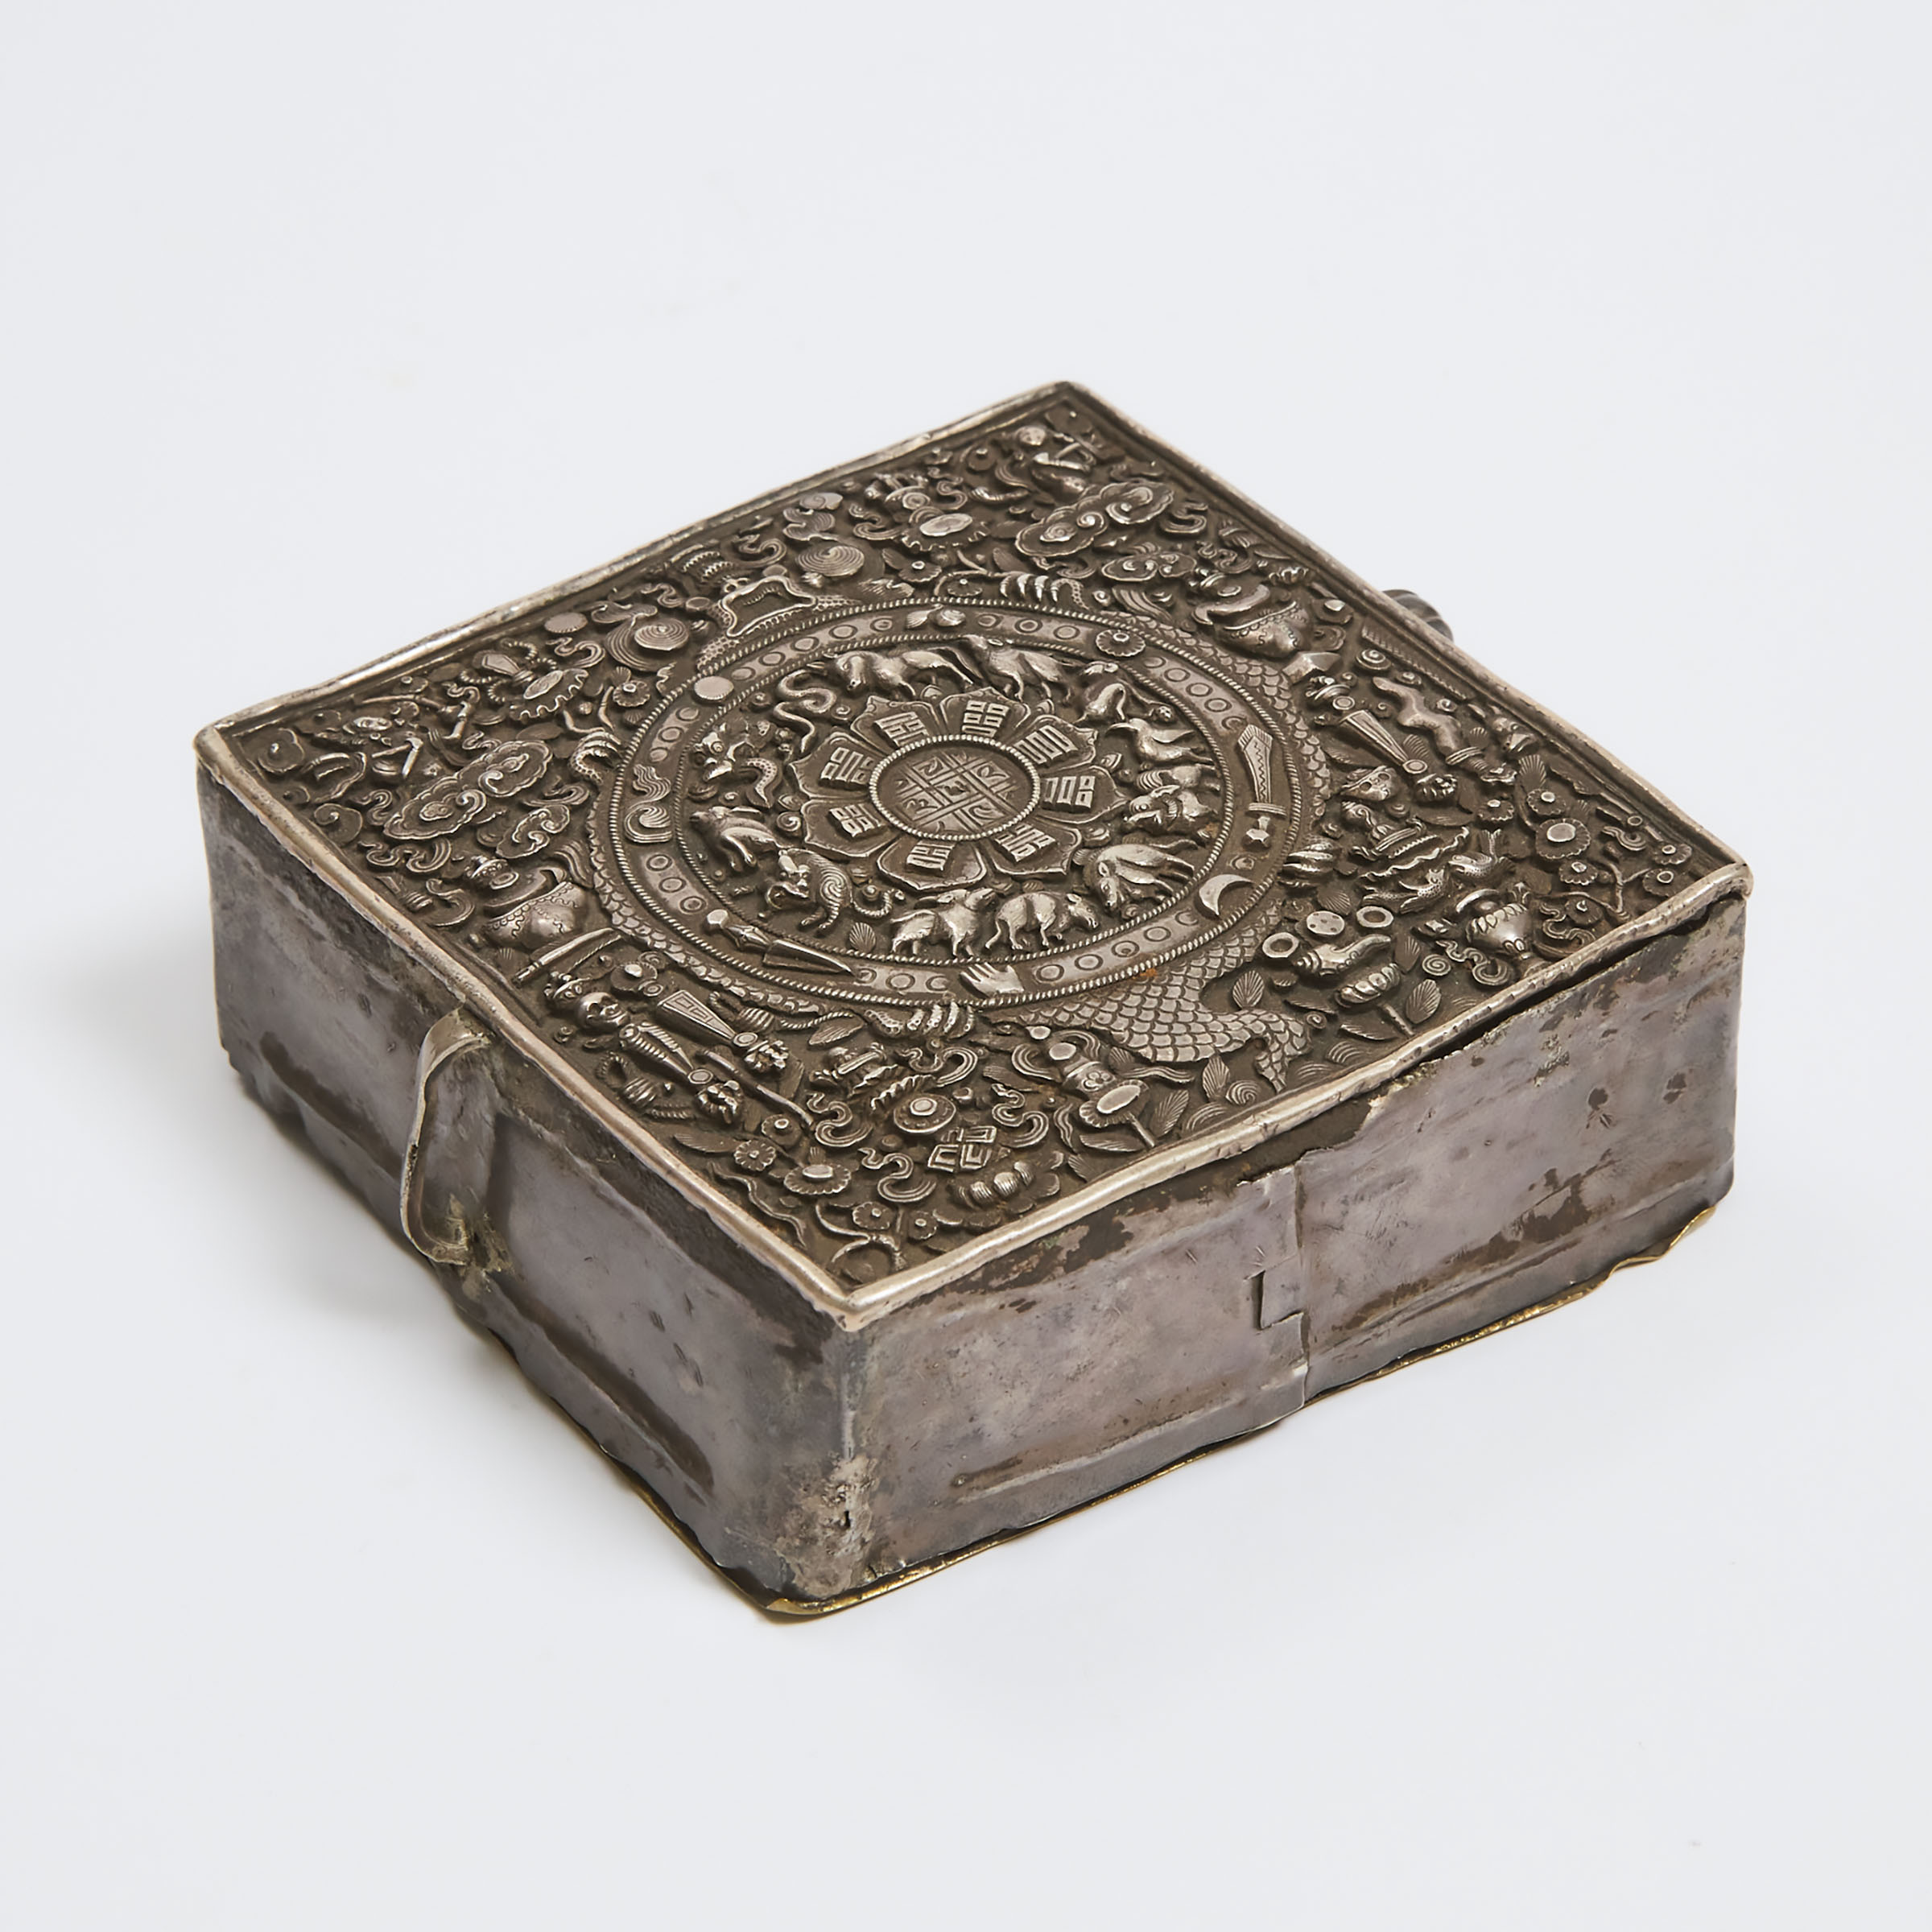 A Tibetan Silver Portable Amulet